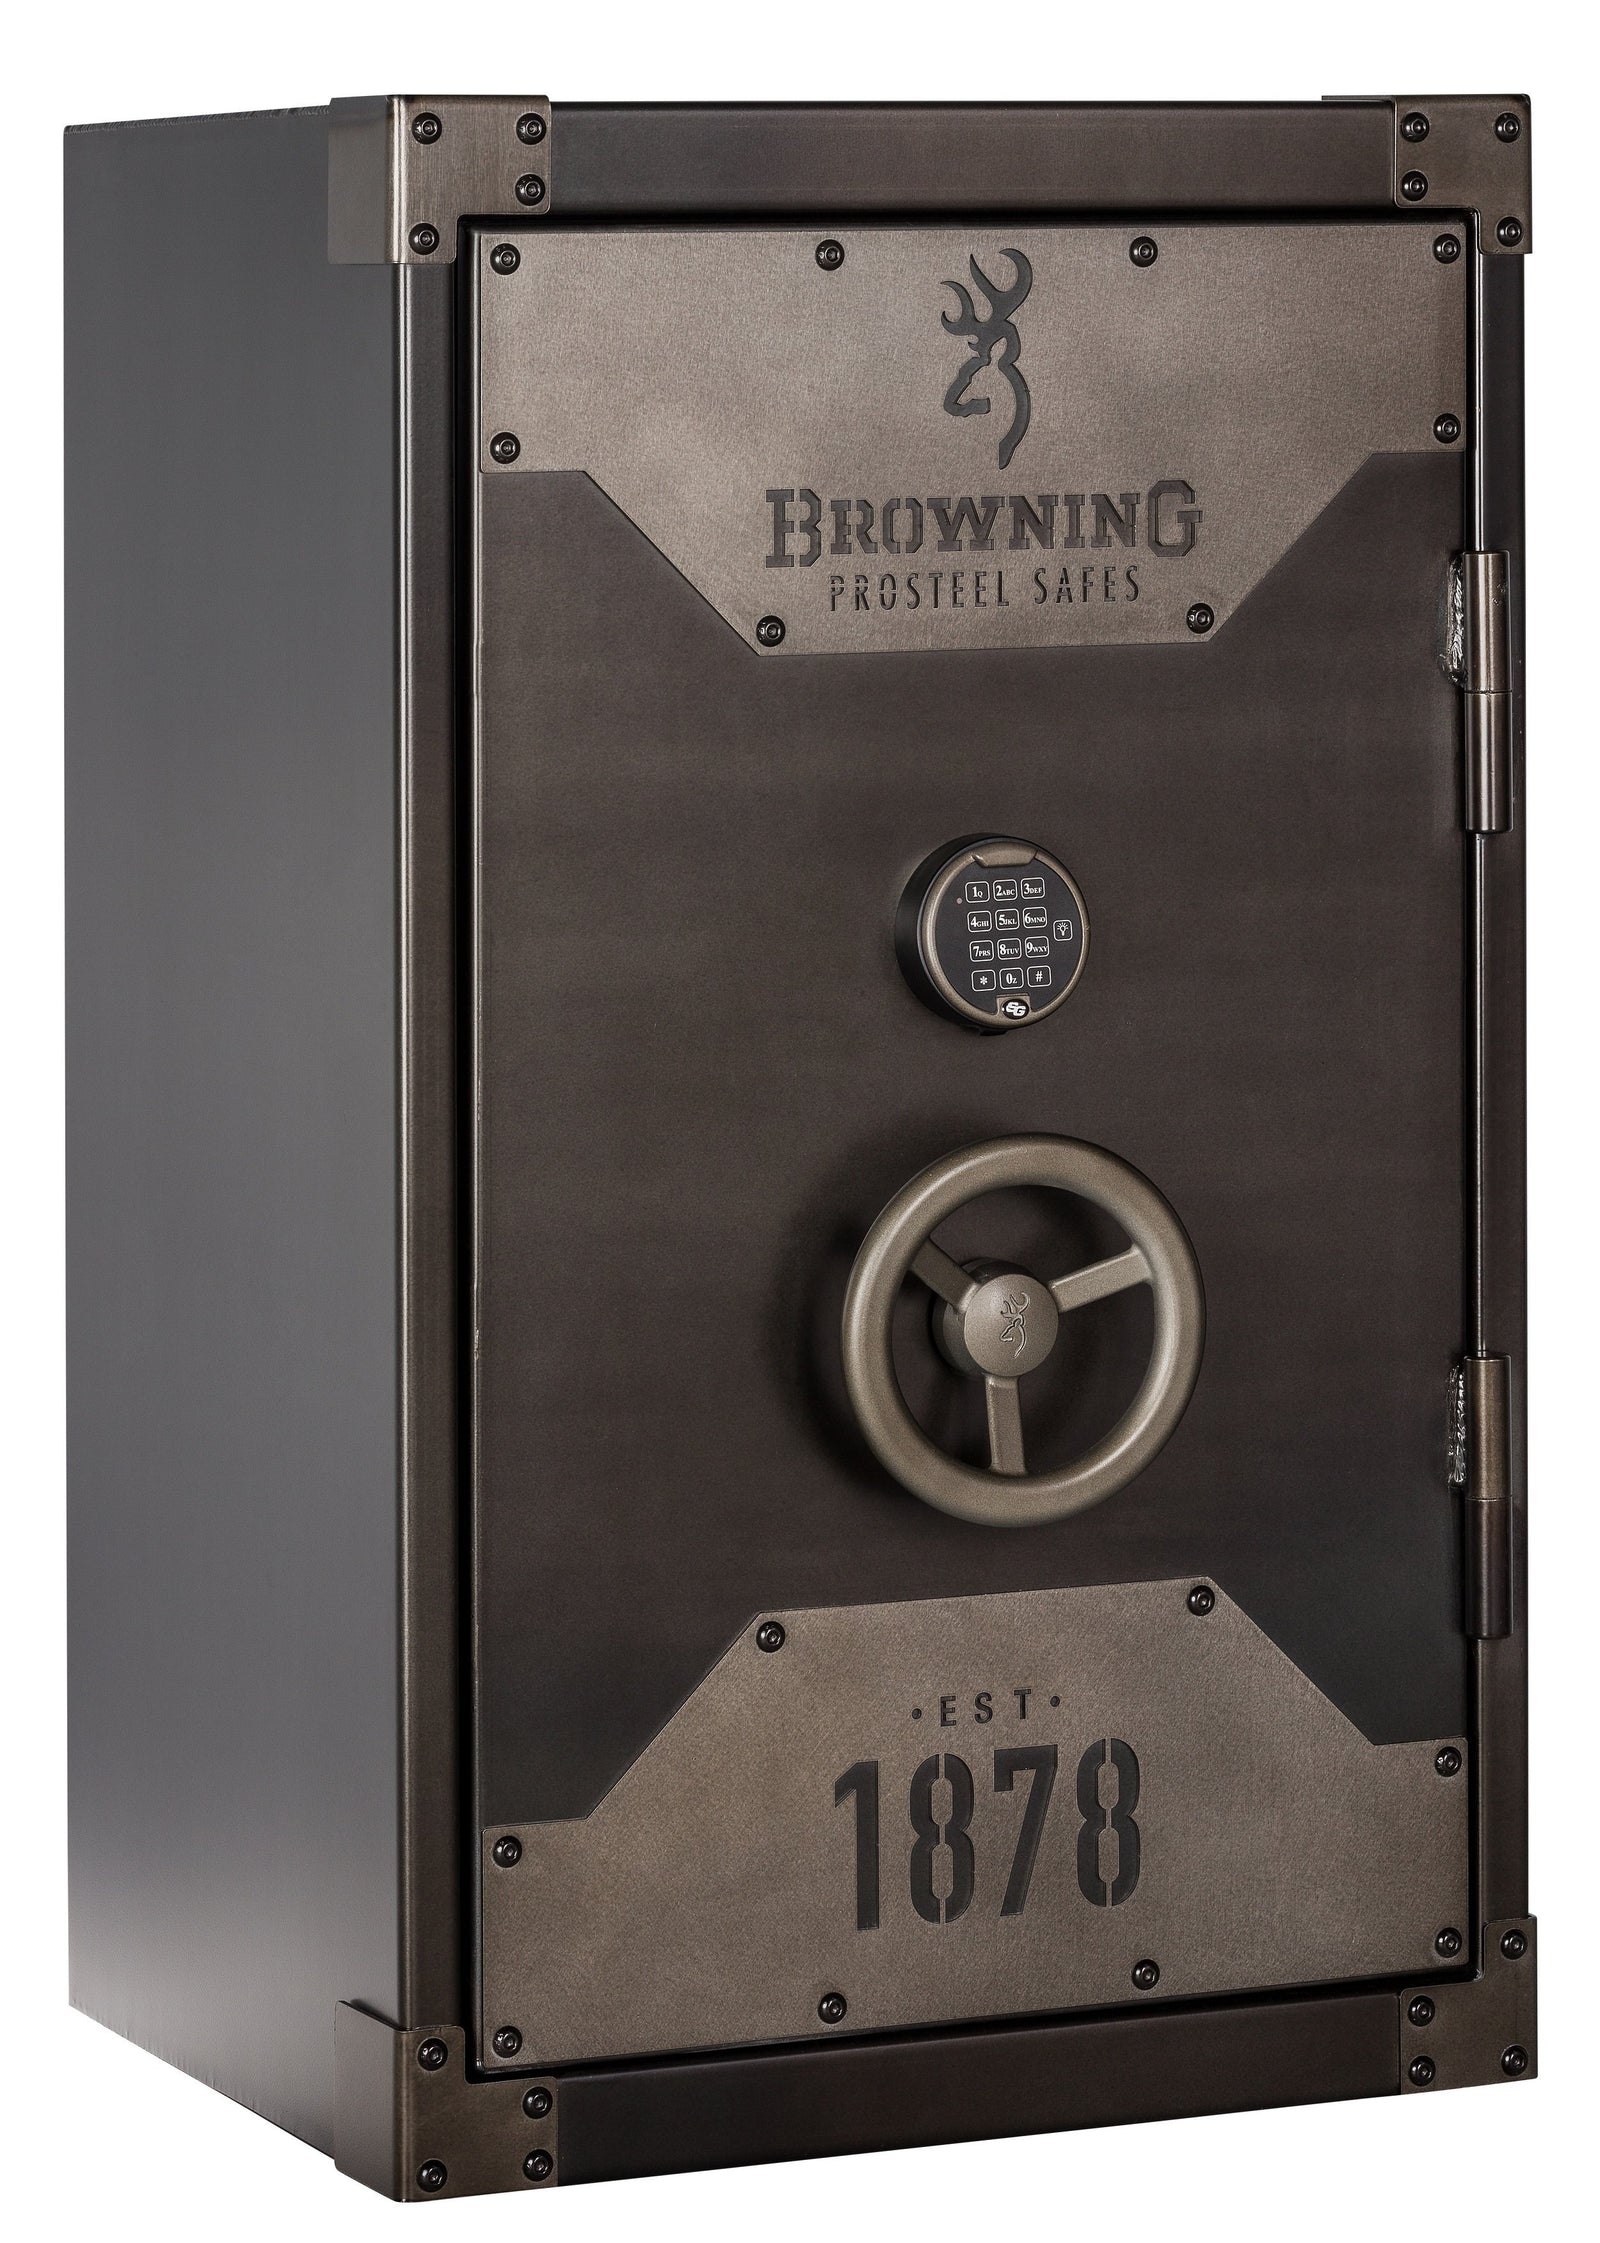 Browning 1878-13 Closet Burglar & 90 Minute Fire Safe